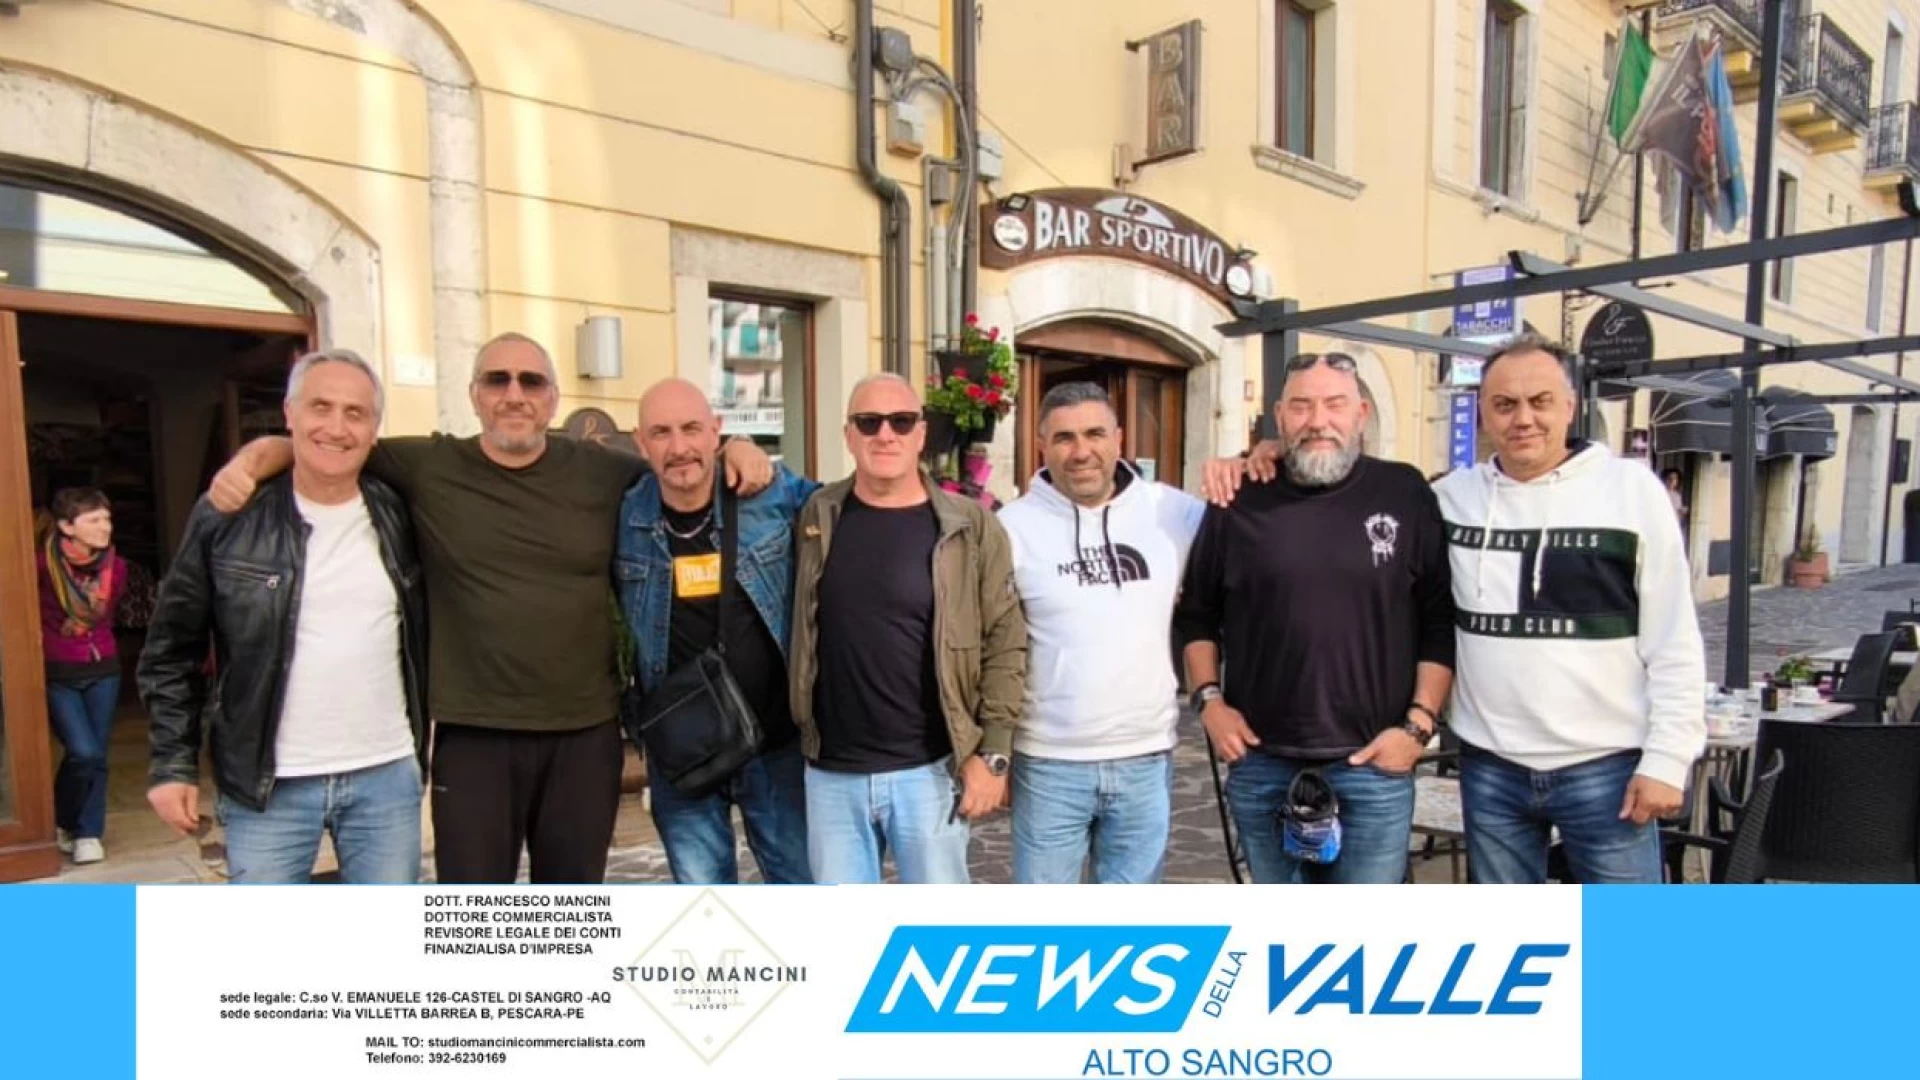 Dopo 34 anni si ritrovano a Castel Di Sangro. I lancieri del sesto Scaglione di Montebello protagonisti di una reunion nella giornata di ieri.